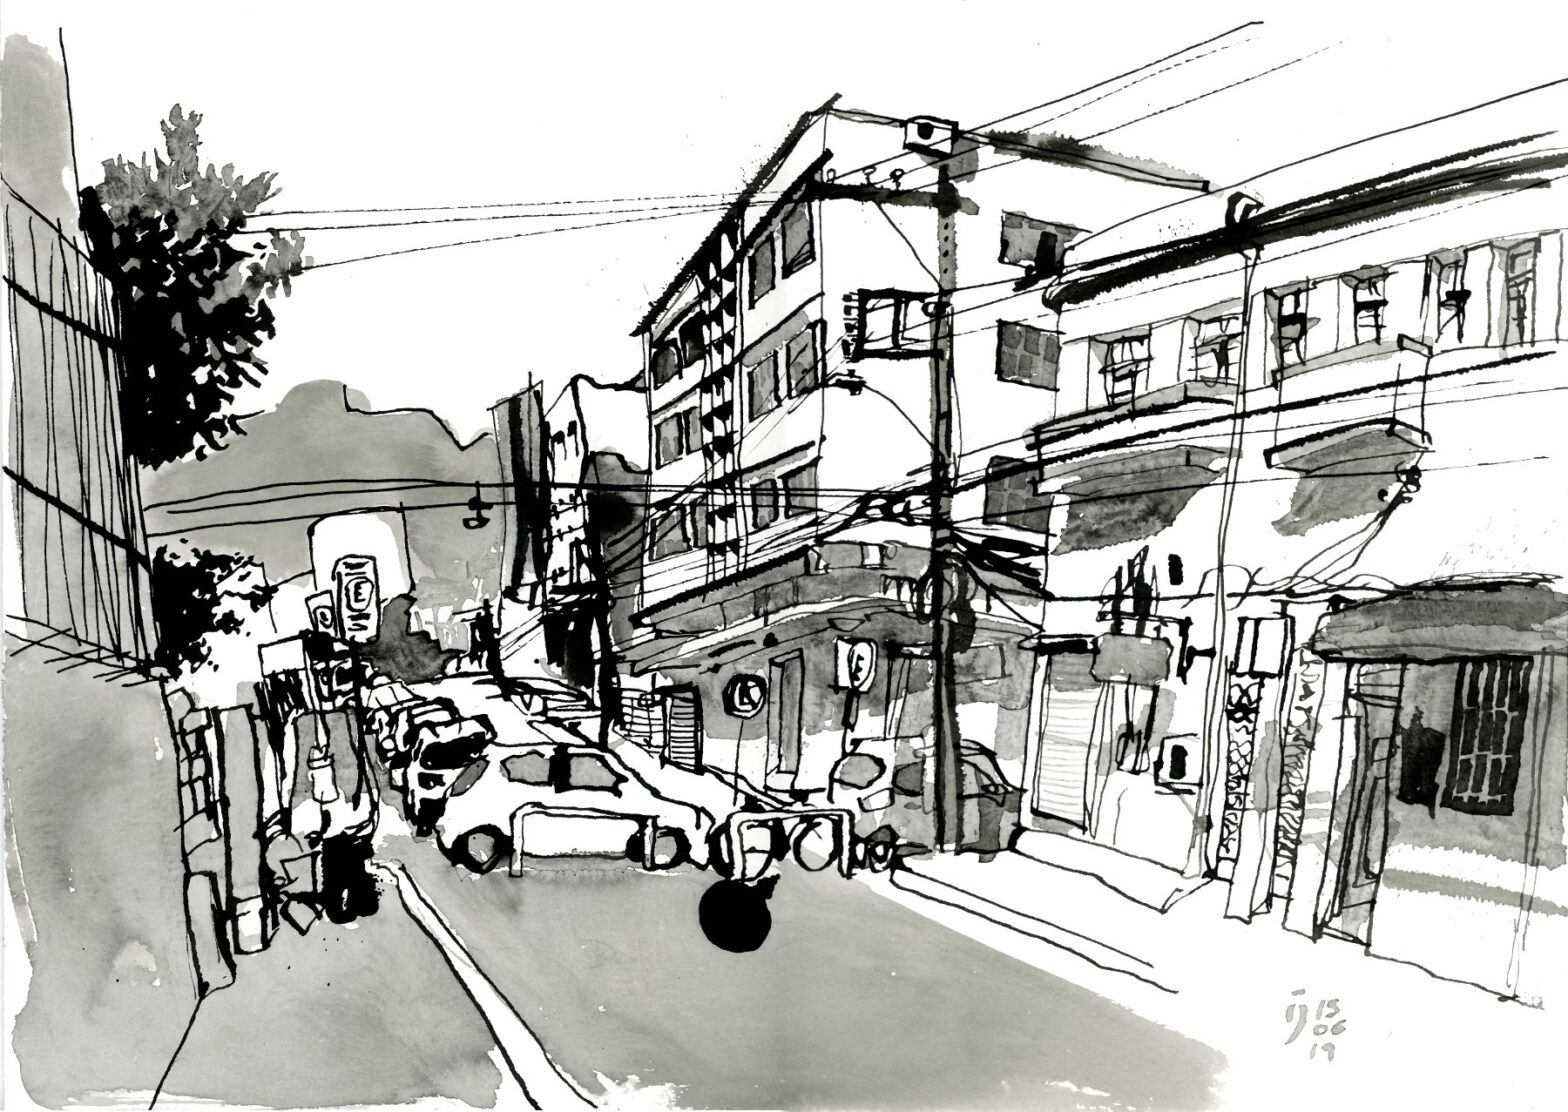 Desenho a traço em nanquim mostrando esquina de duas ruas com prédios, carros estacionados e postes